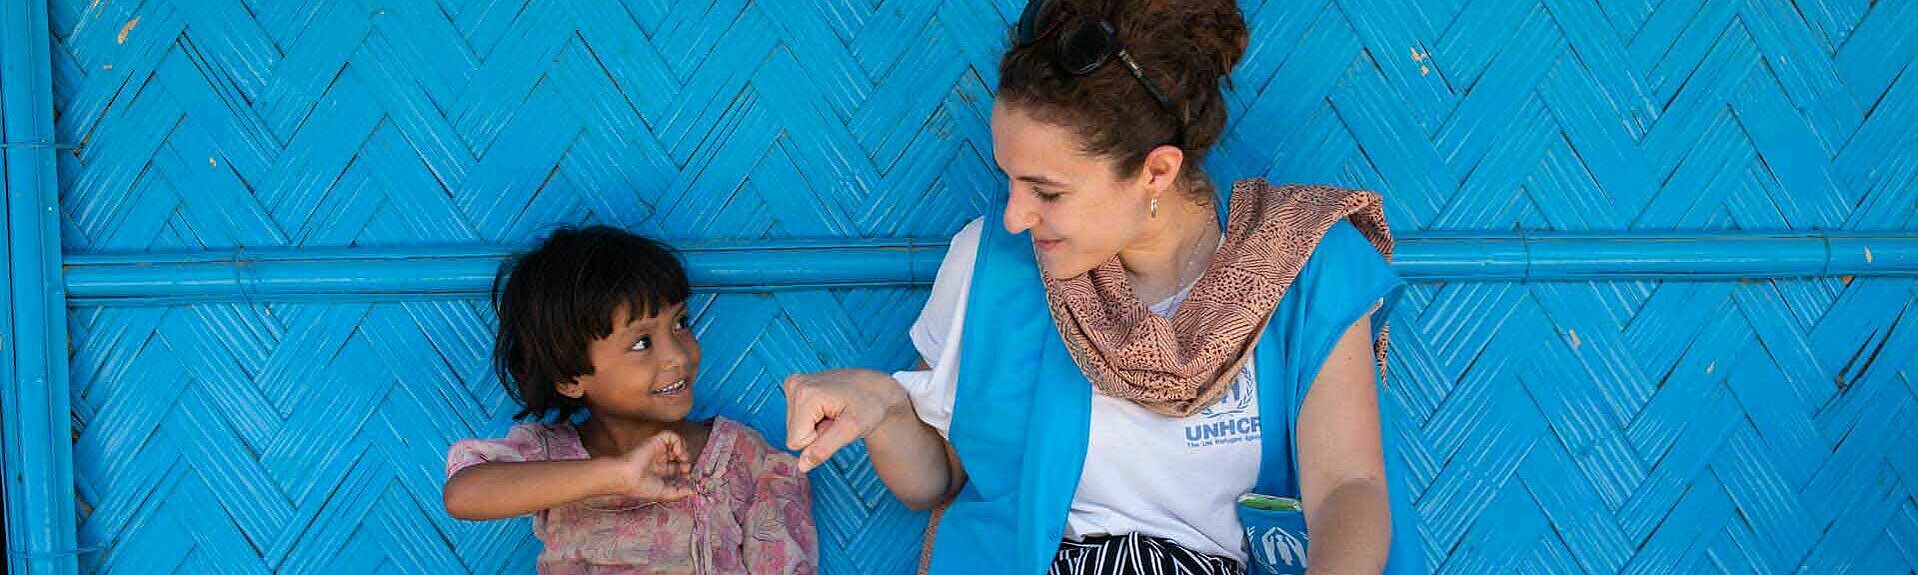 UNHCR-Helferin mit Mädchen